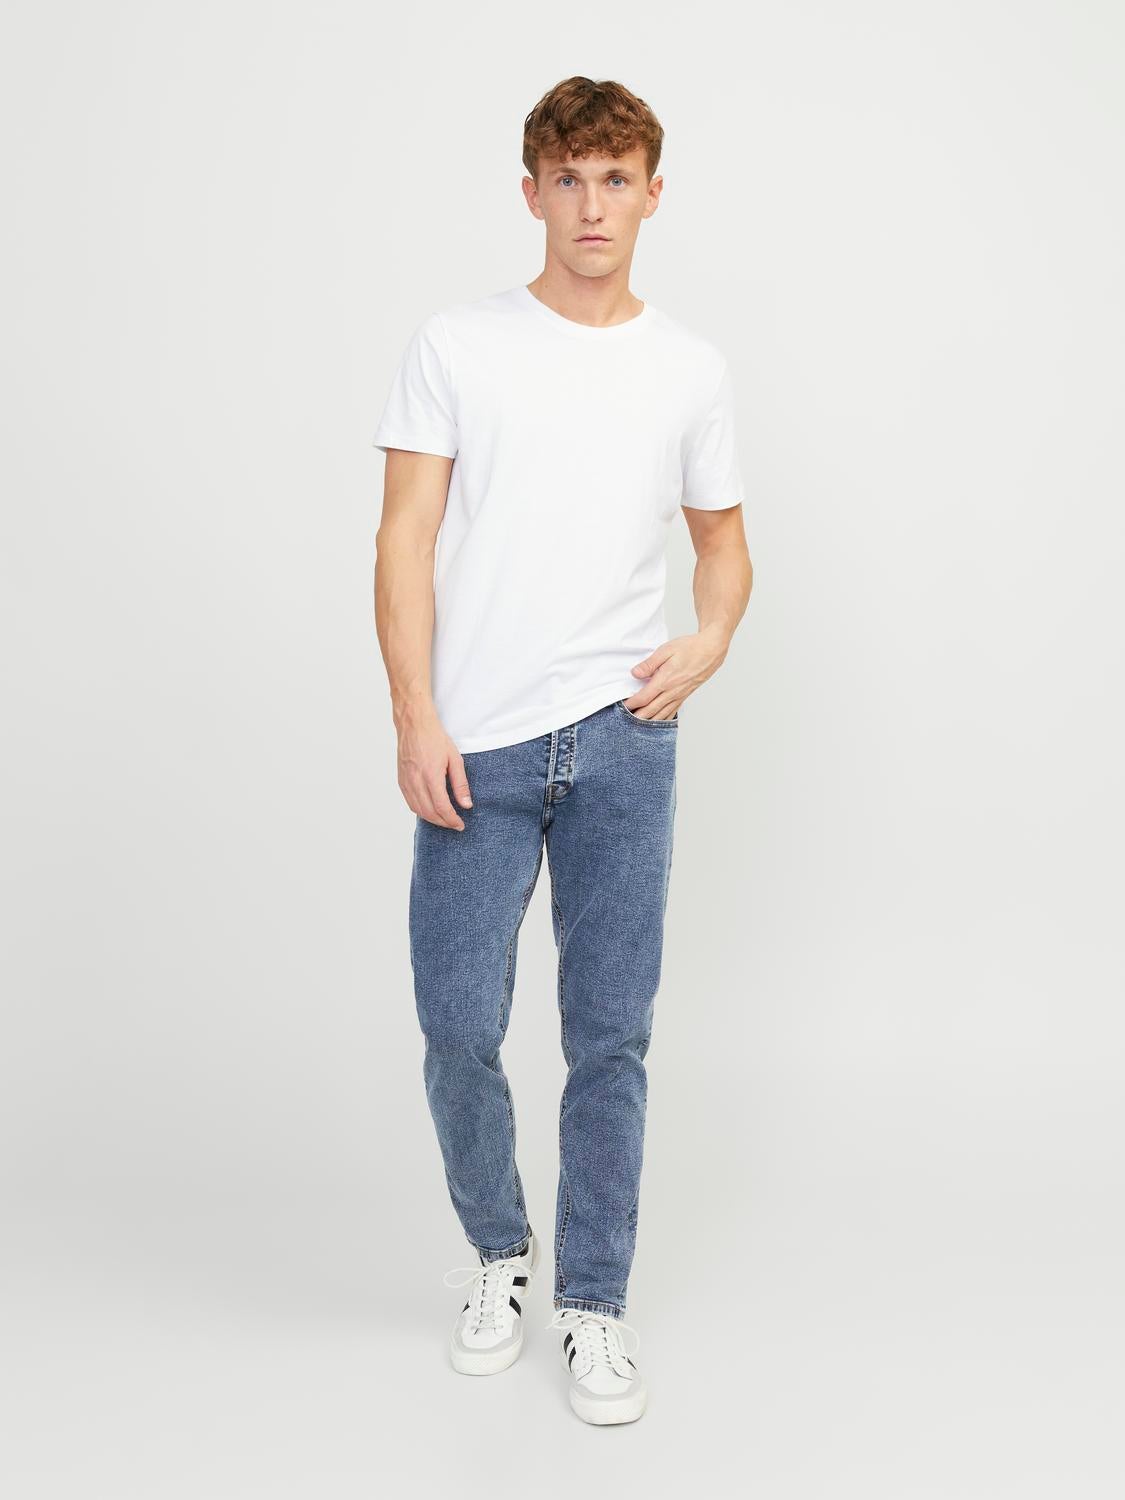 JJIERIK JJORIGINAL MF 931 EXP Tapered fit jeans | Medium Blue 